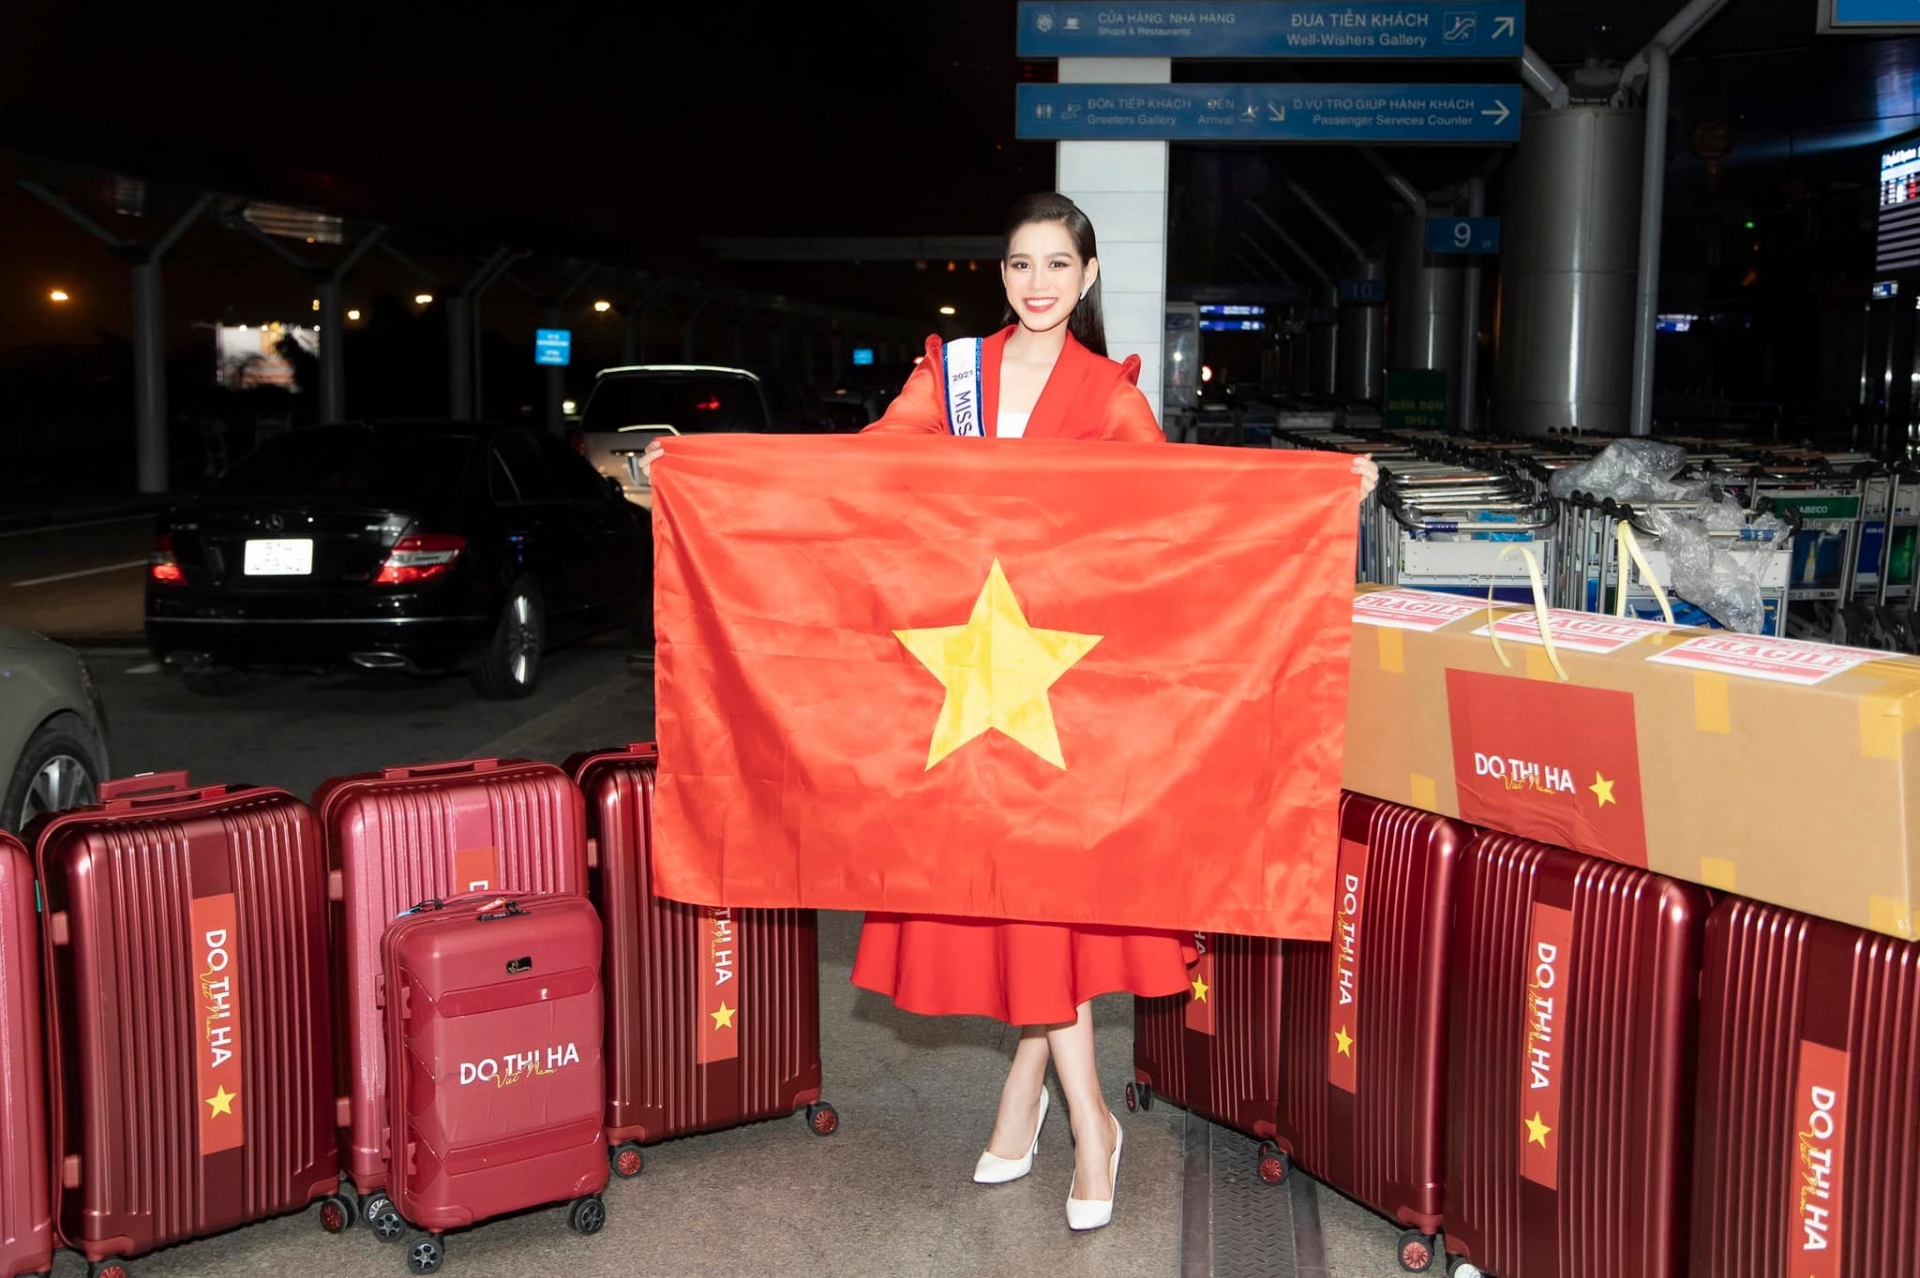 Đỗ Thị Hà mang theo gần 10 chiếc vali 200 kg để tham dự Miss World 2021